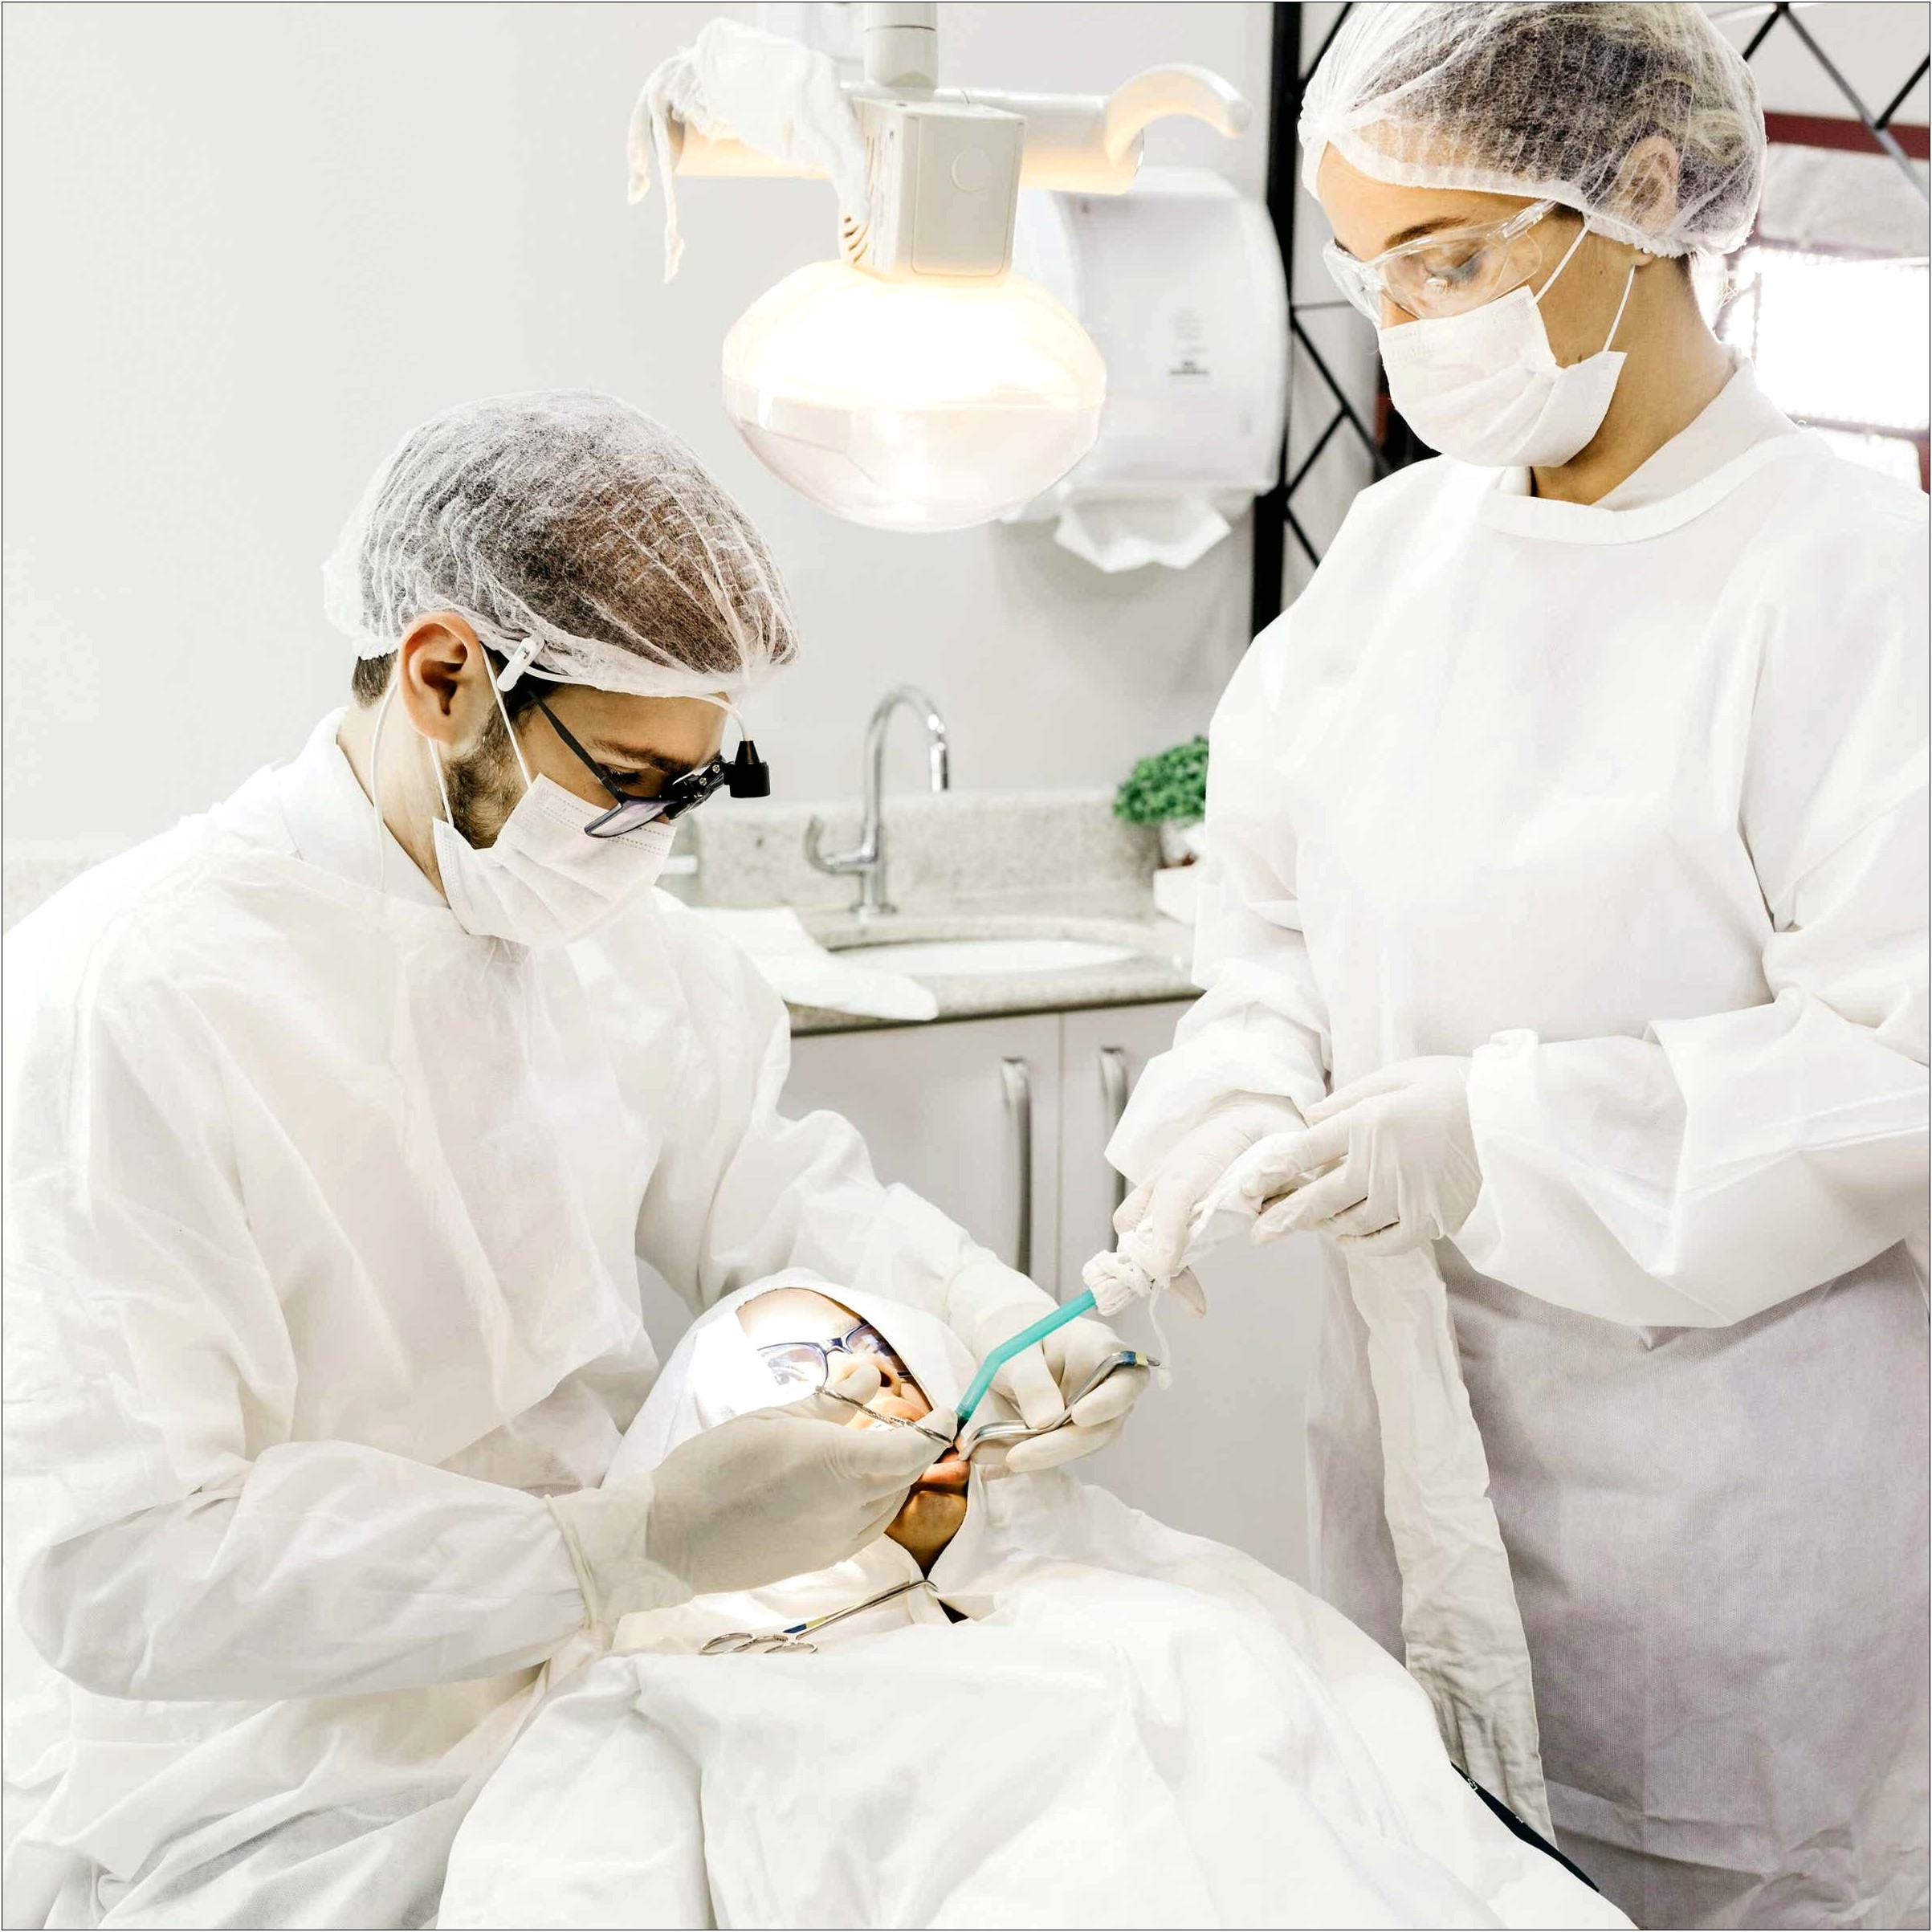 Oral Surgery Assistant Job Description For Resume